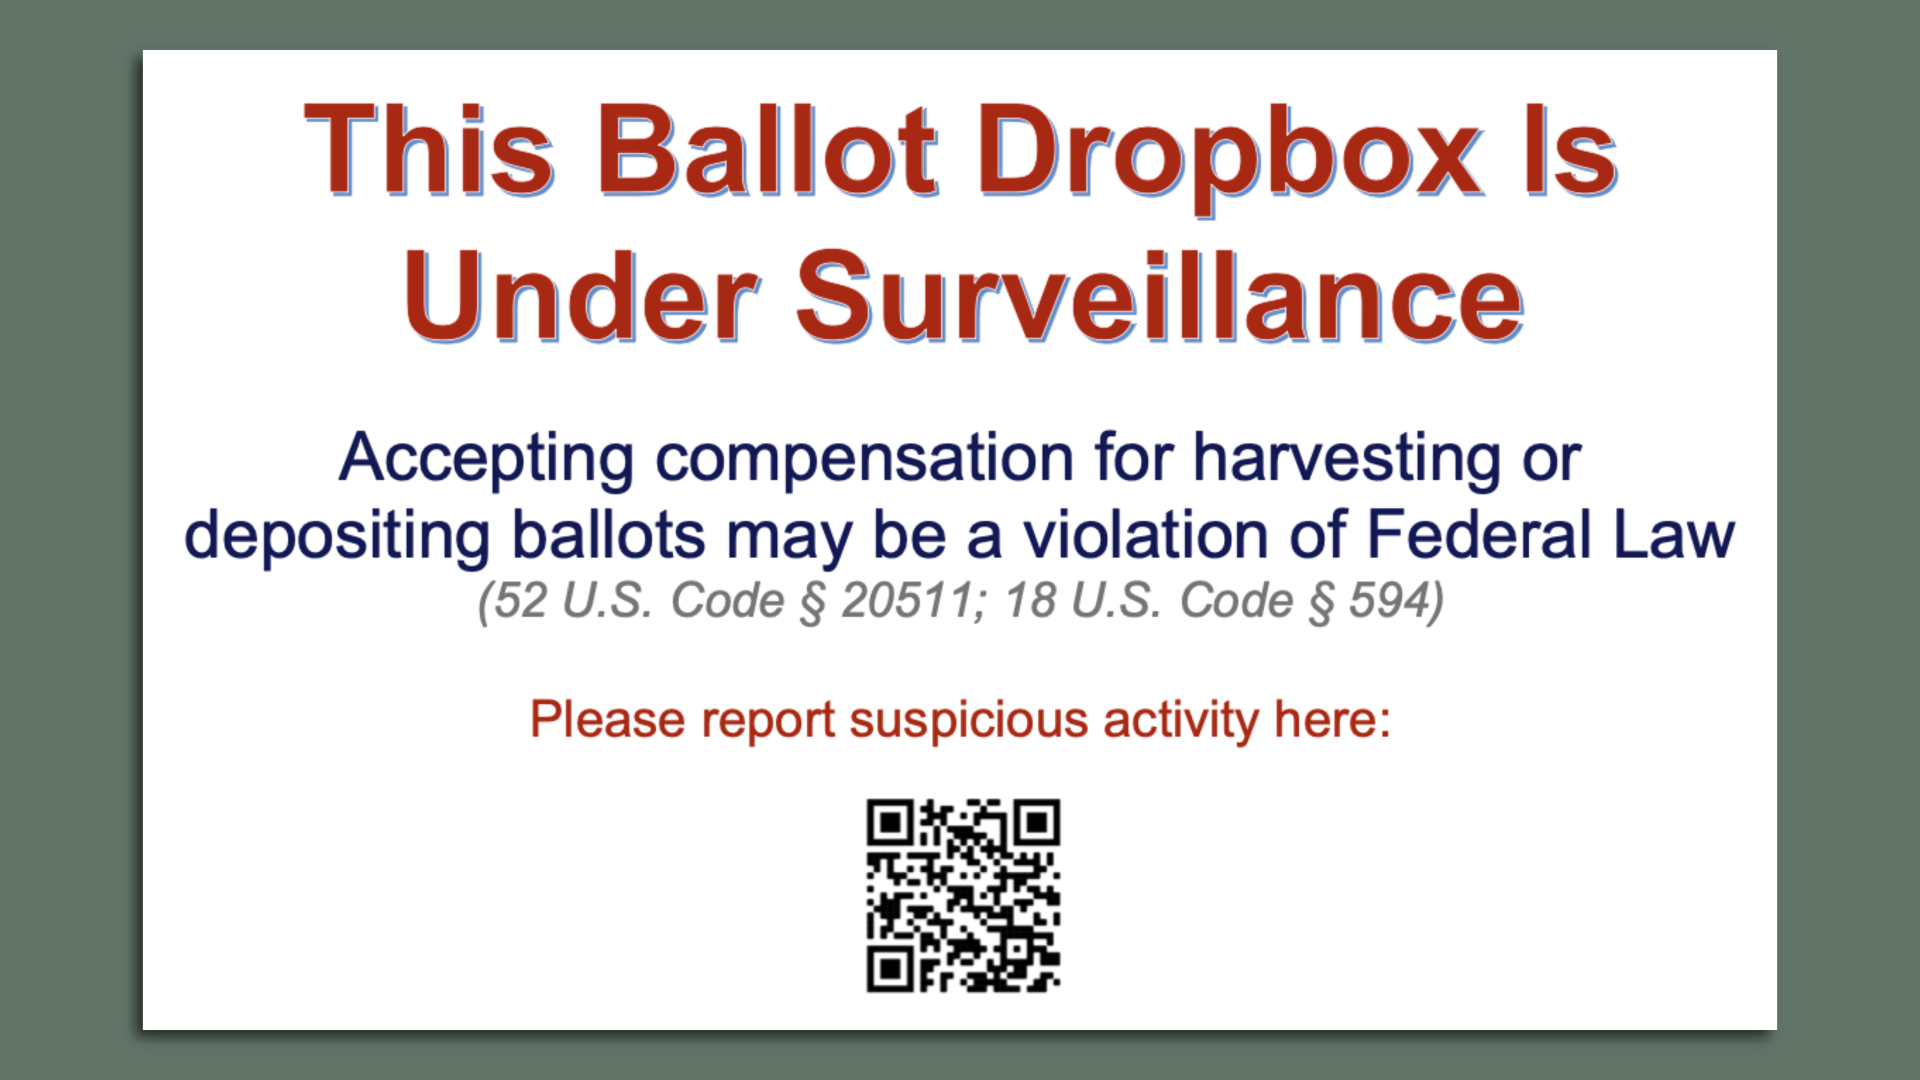 Ballot dropbox under surveillance